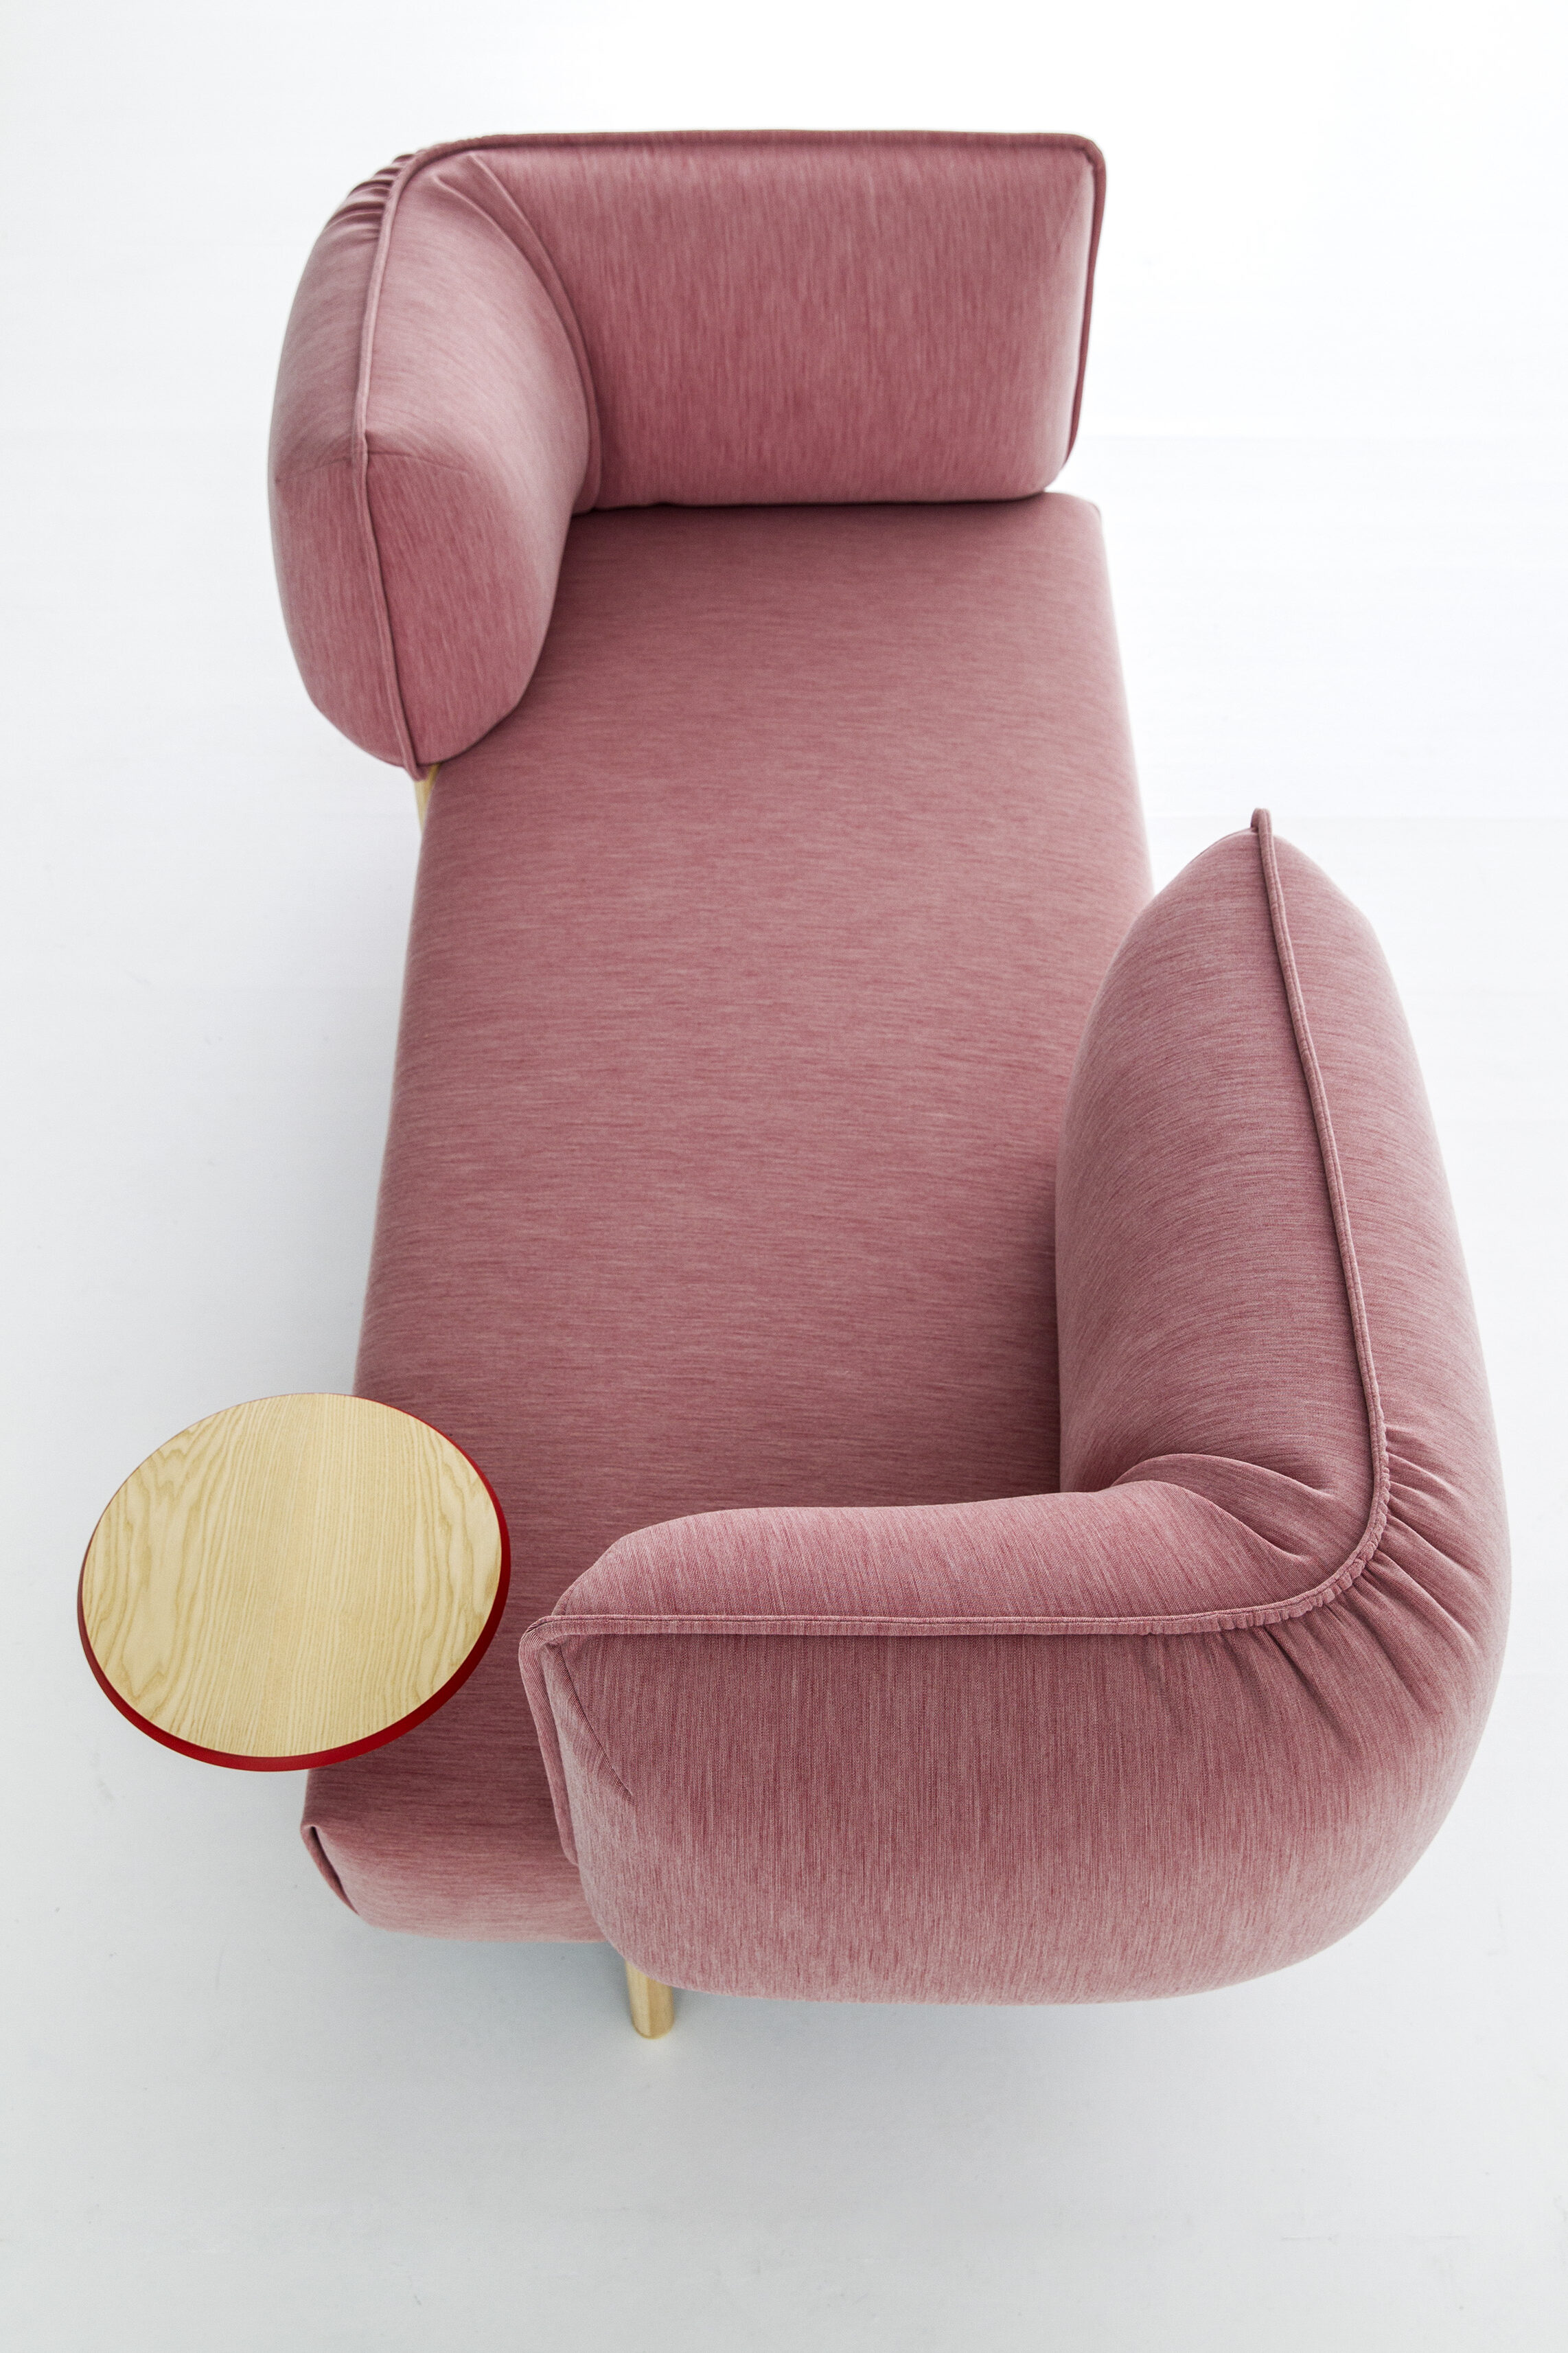 love (me) tender patricia urquiola für moroso modulares couchsystem design inneneinrichtung einrichtungsidee